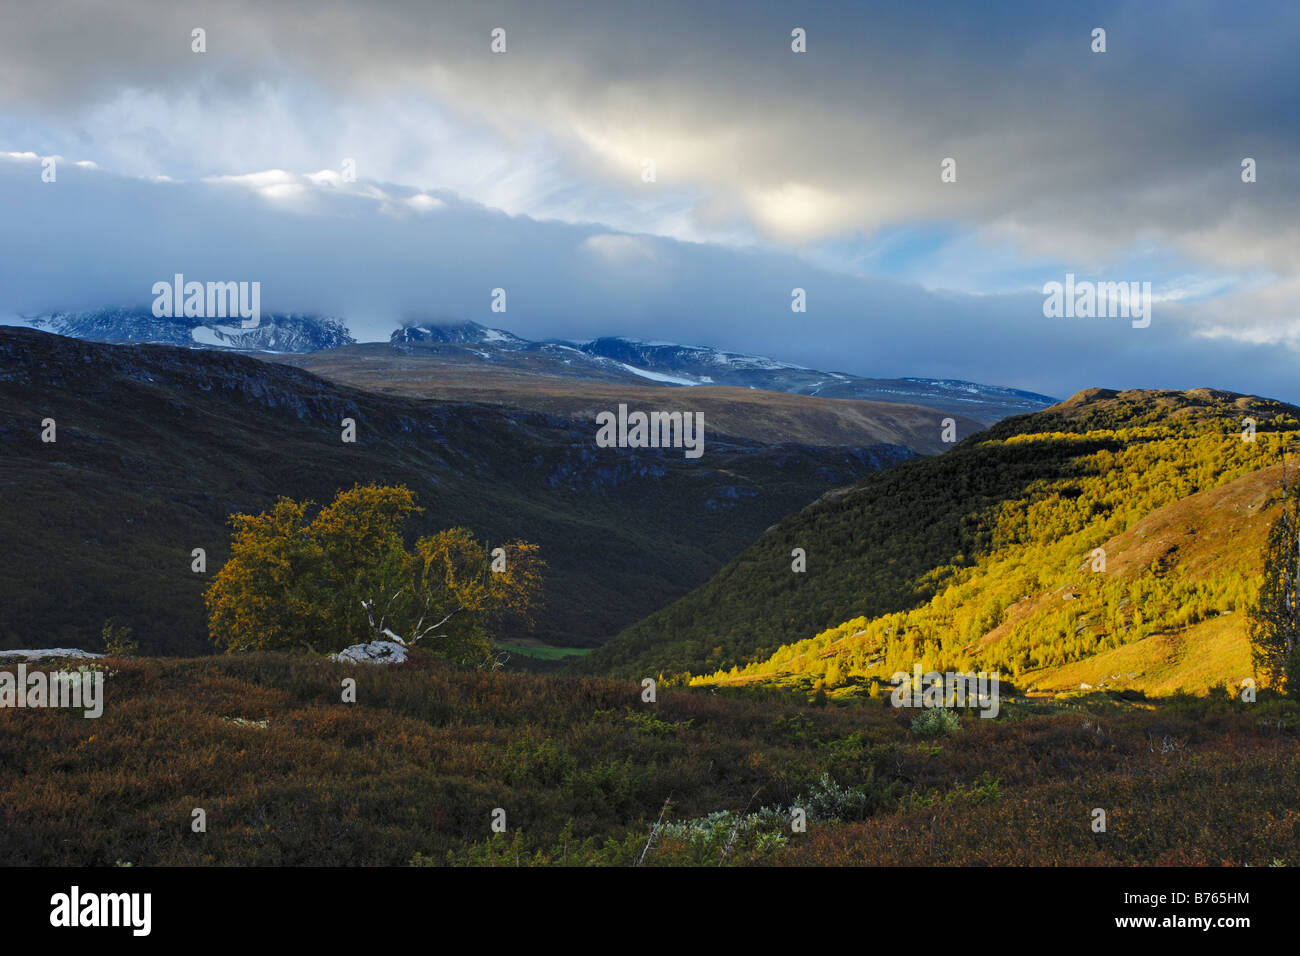 Pioggia nuvole furuhaugli scenari montuosi Oppland Norvegia nord europa autunno paesaggio paesaggio Foto Stock